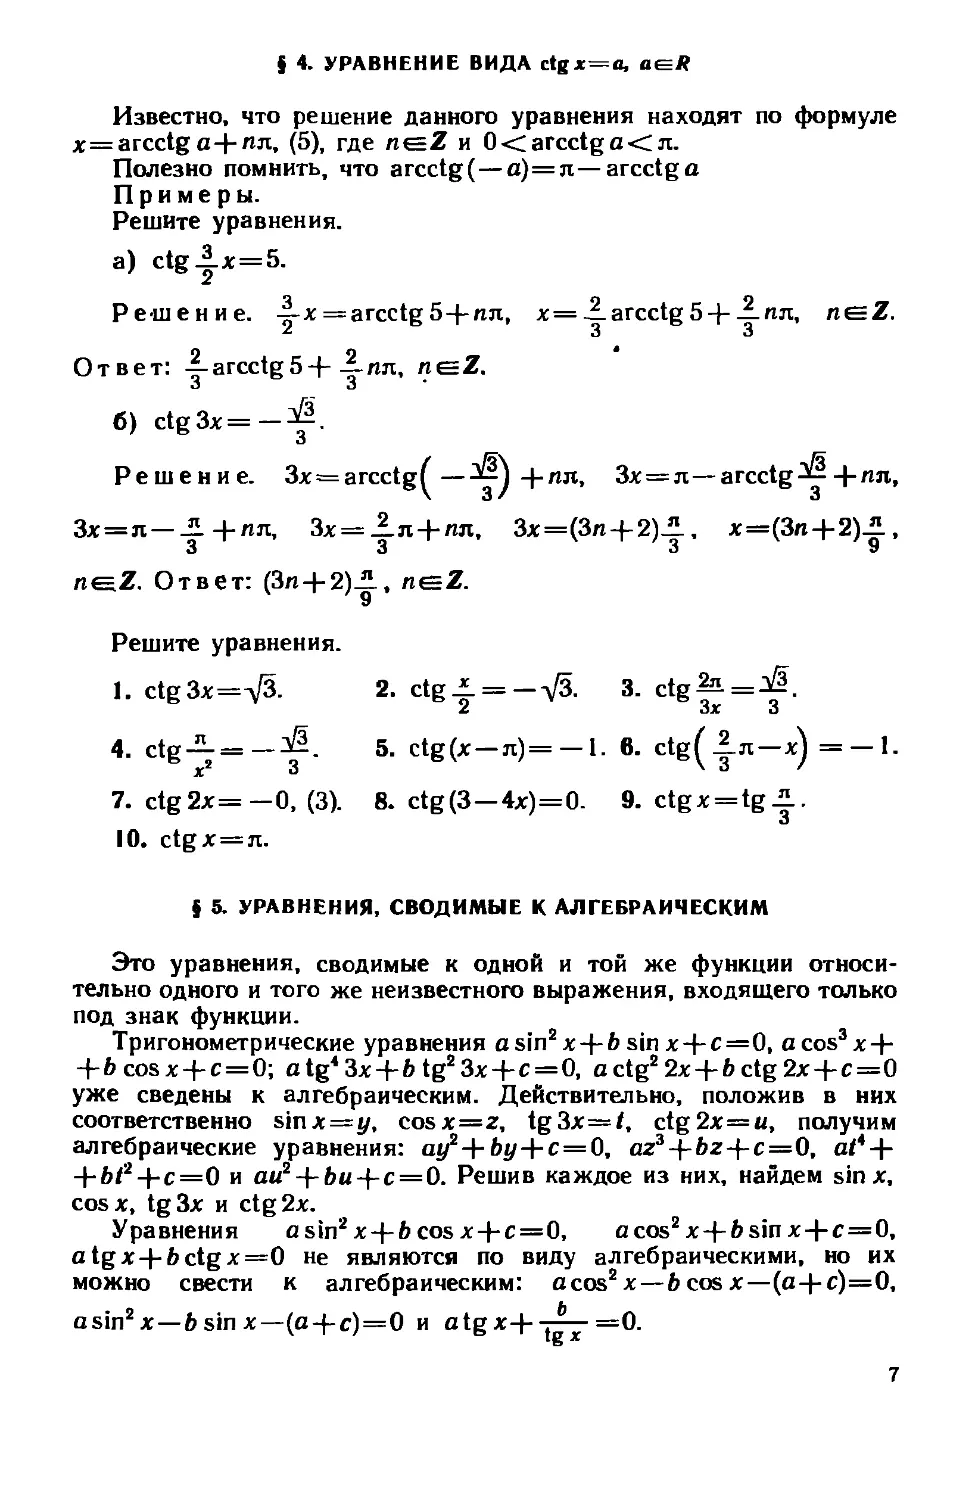 § 4. Уравнения вида ctgx=a
§ 5. Уравнения, сводимые к алгебраическим .